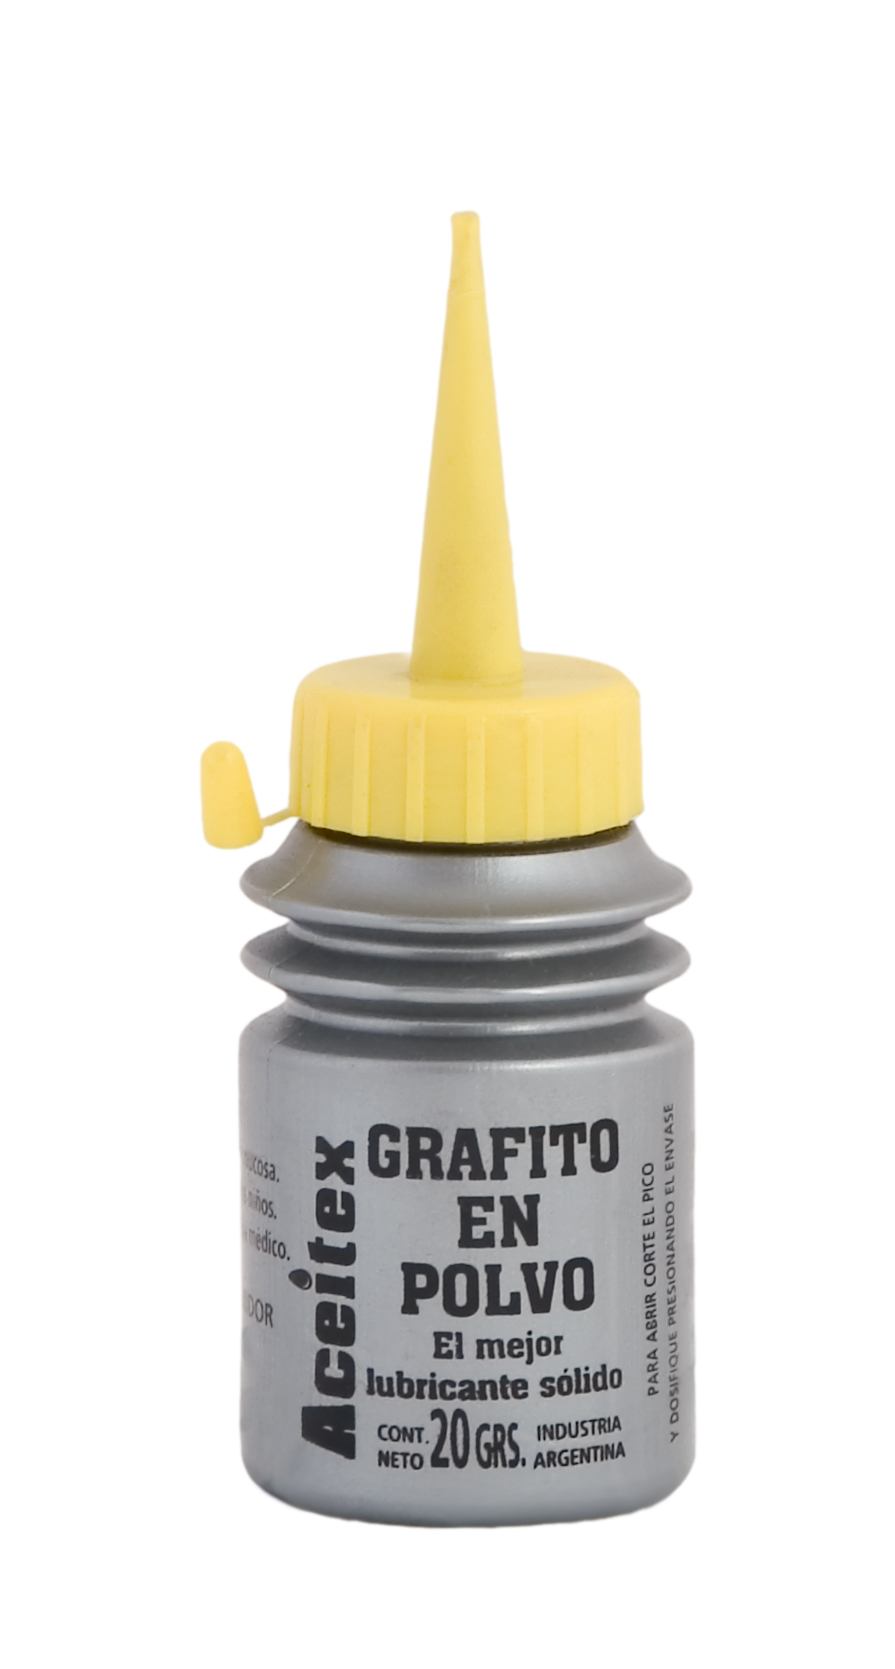 Lubricante de grafito puro microfino, multiusos, polvo lubricante